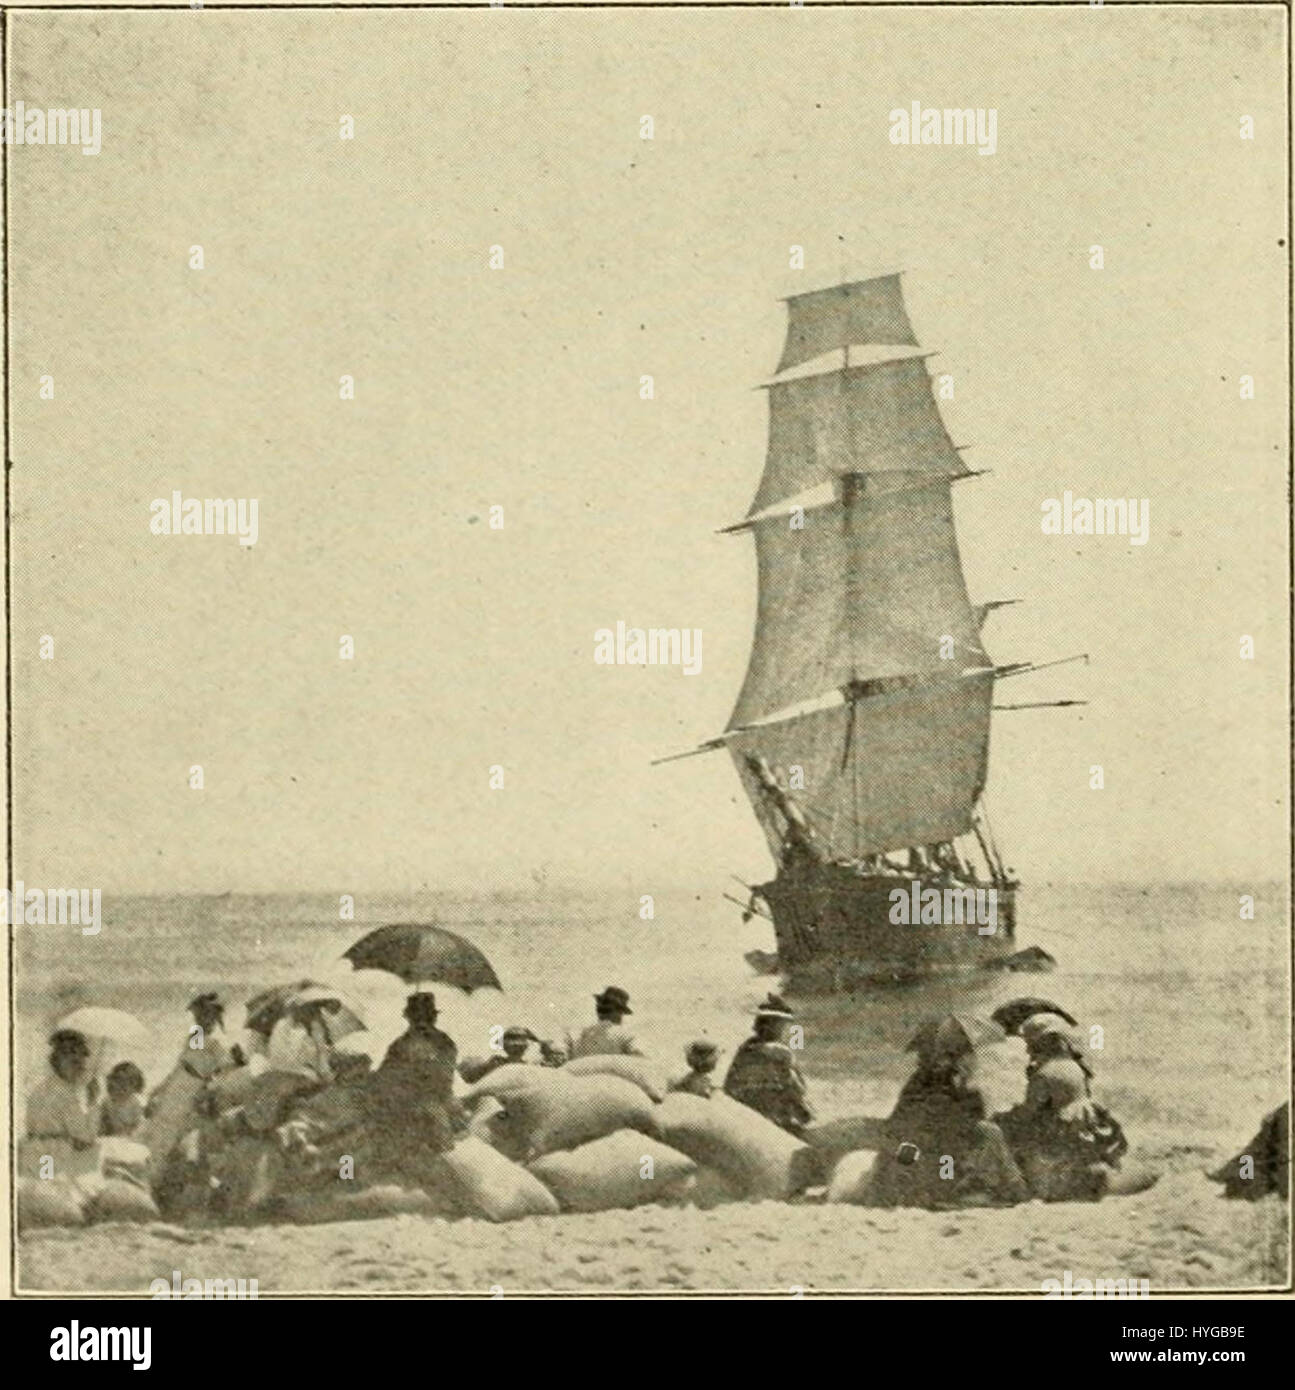 Shipwreck off Nantucket Wreck off Nantucket after a Storm, ca. 1860-61.